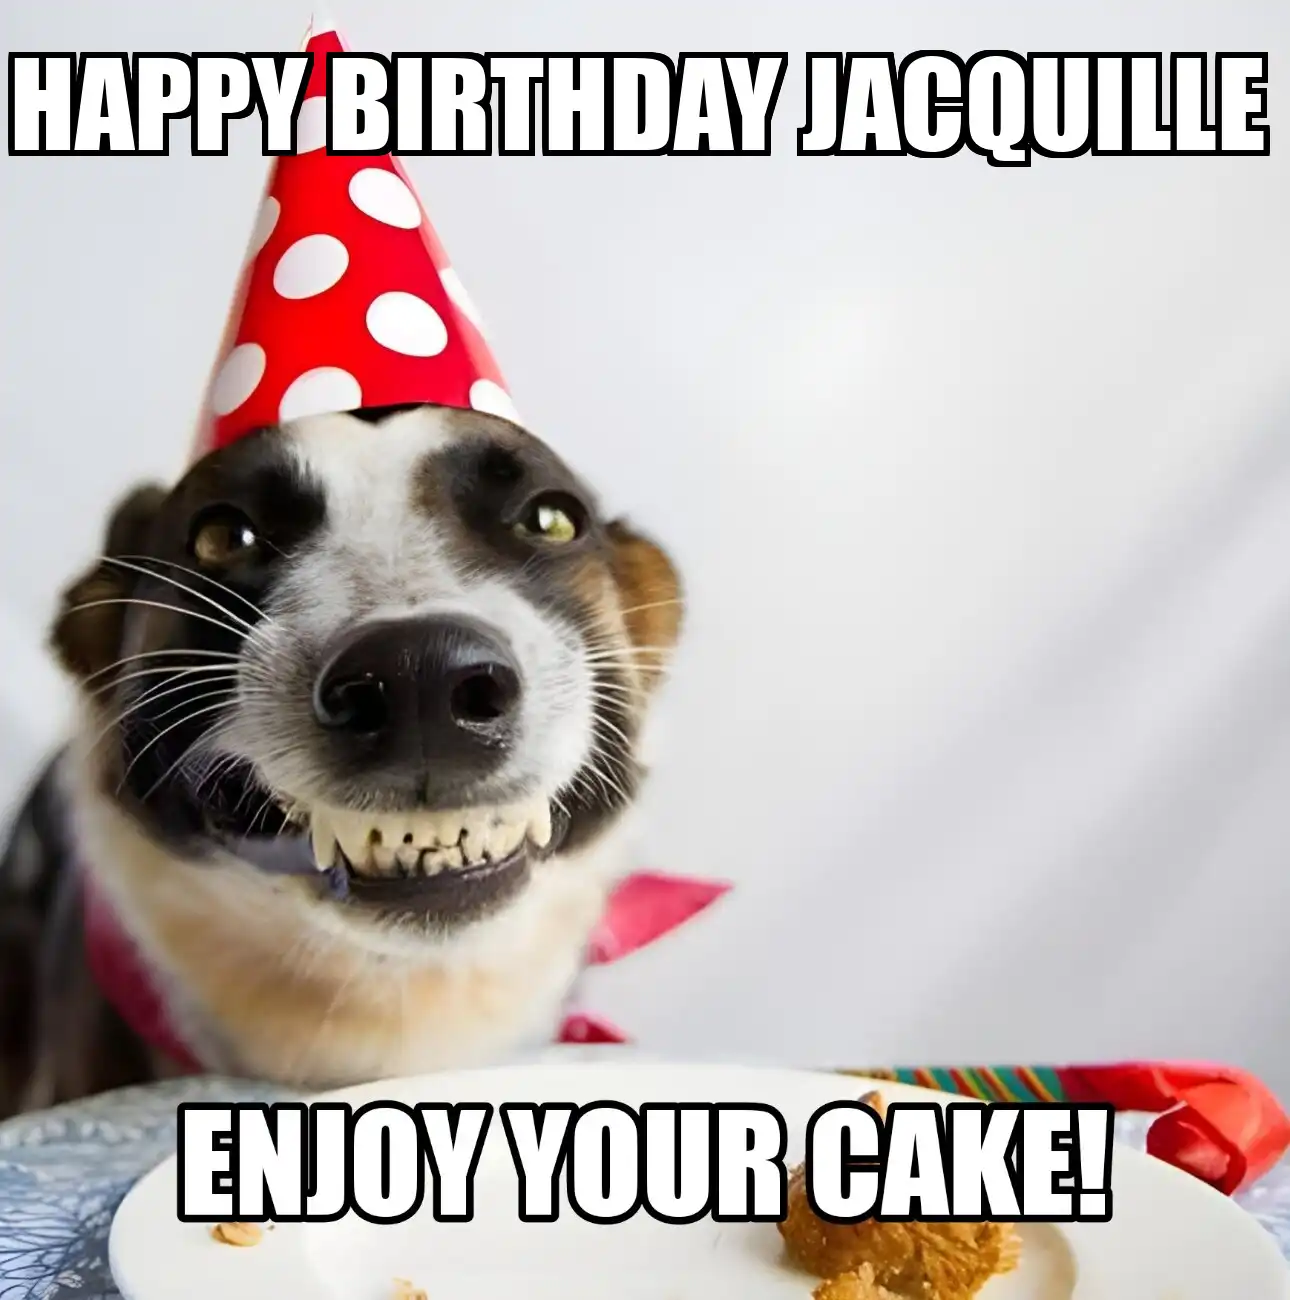 Happy Birthday Jacquille Enjoy Your Cake Dog Meme